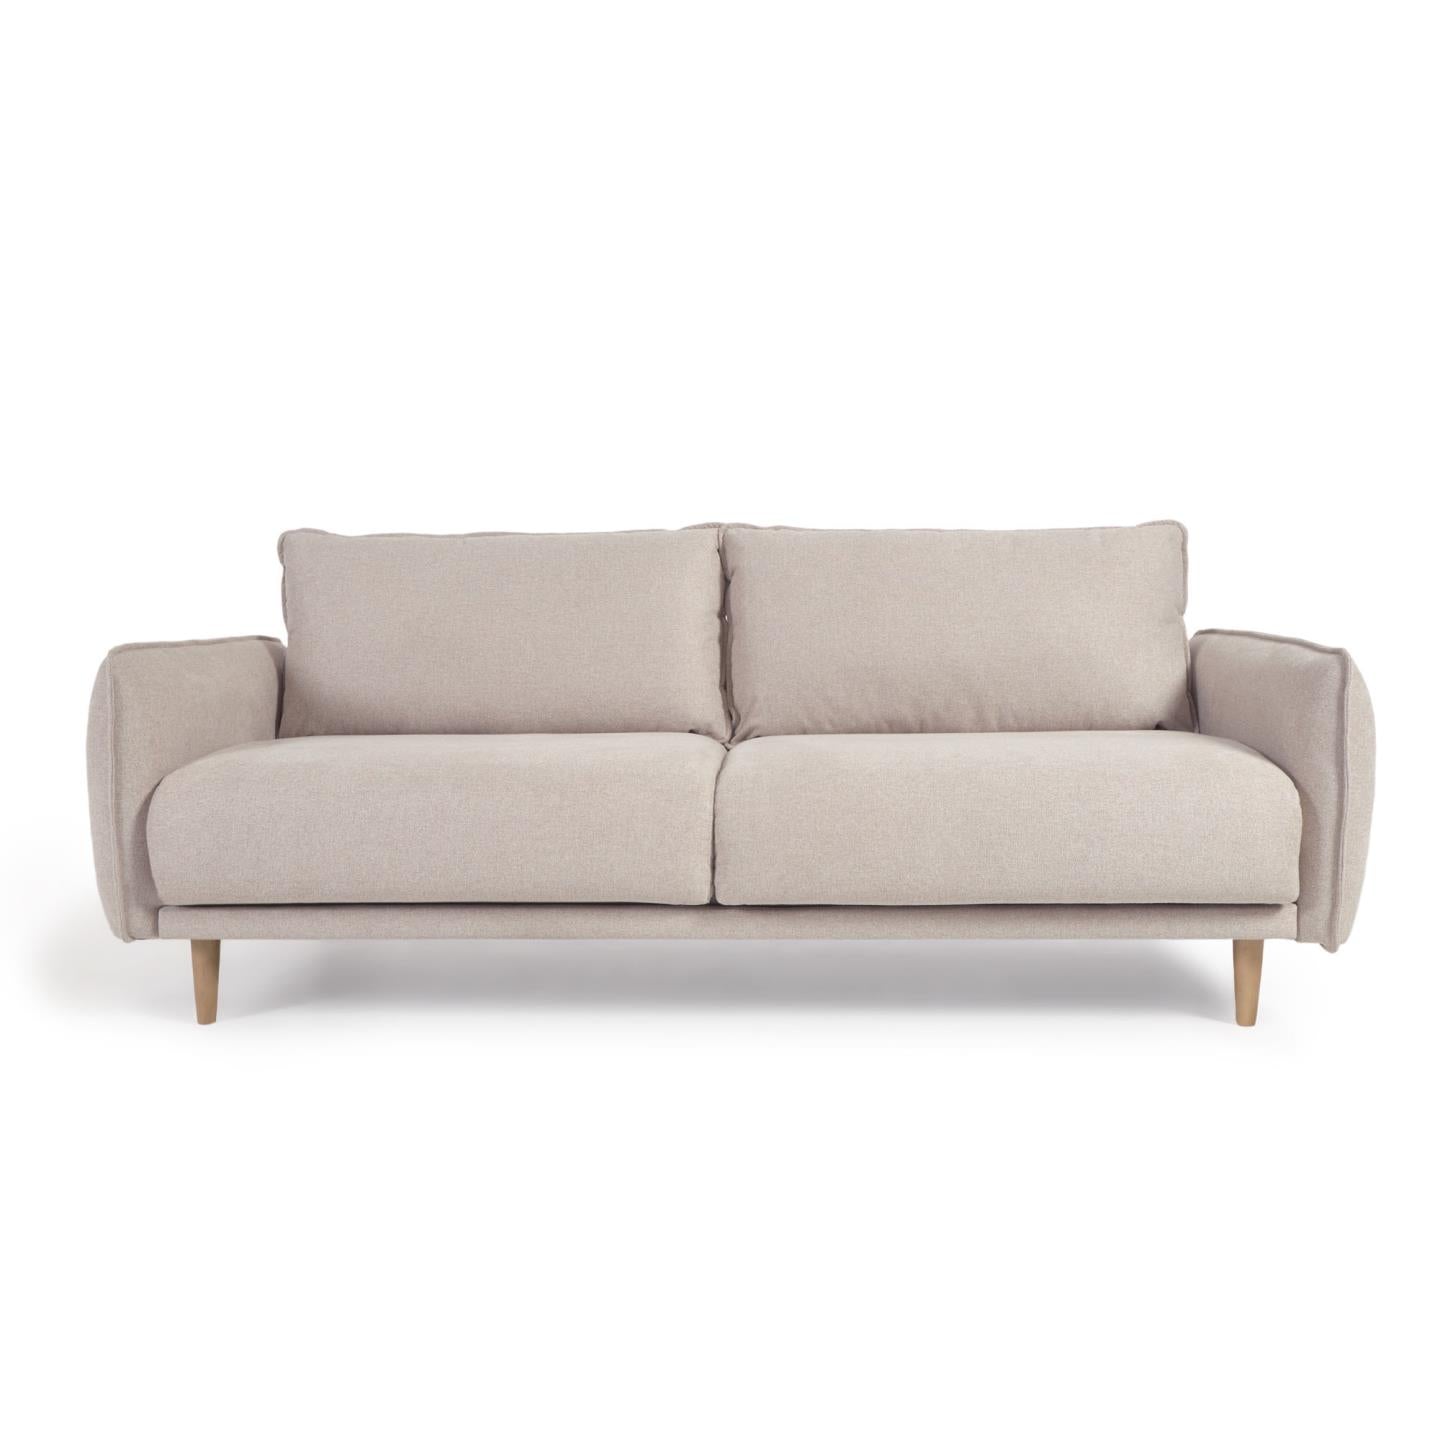 3 seater Carlota sofa in beige, 213 cm